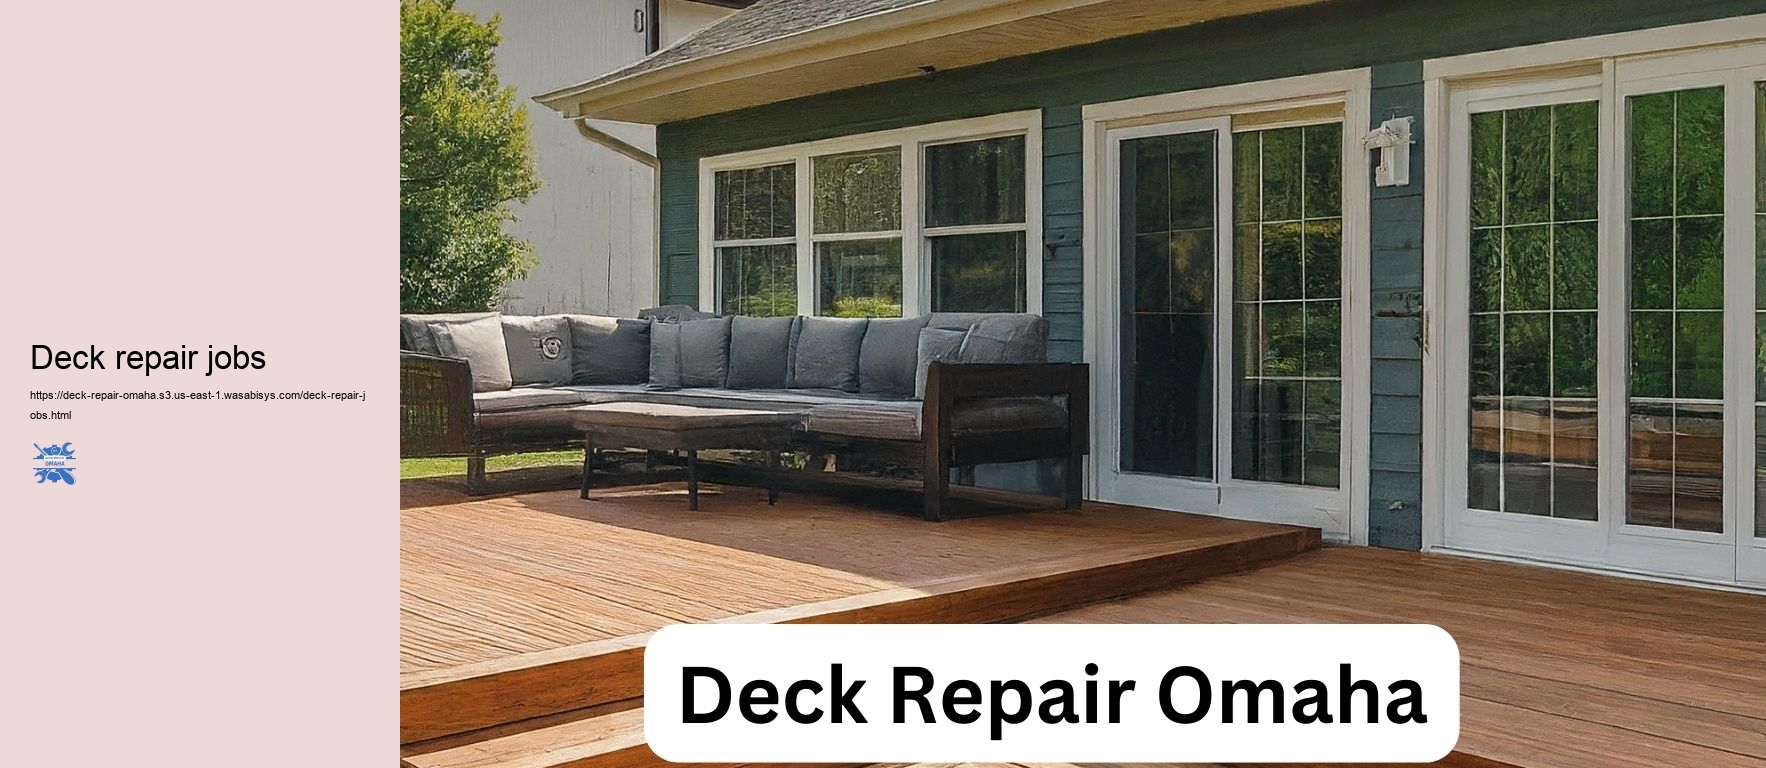 Deck repair jobs